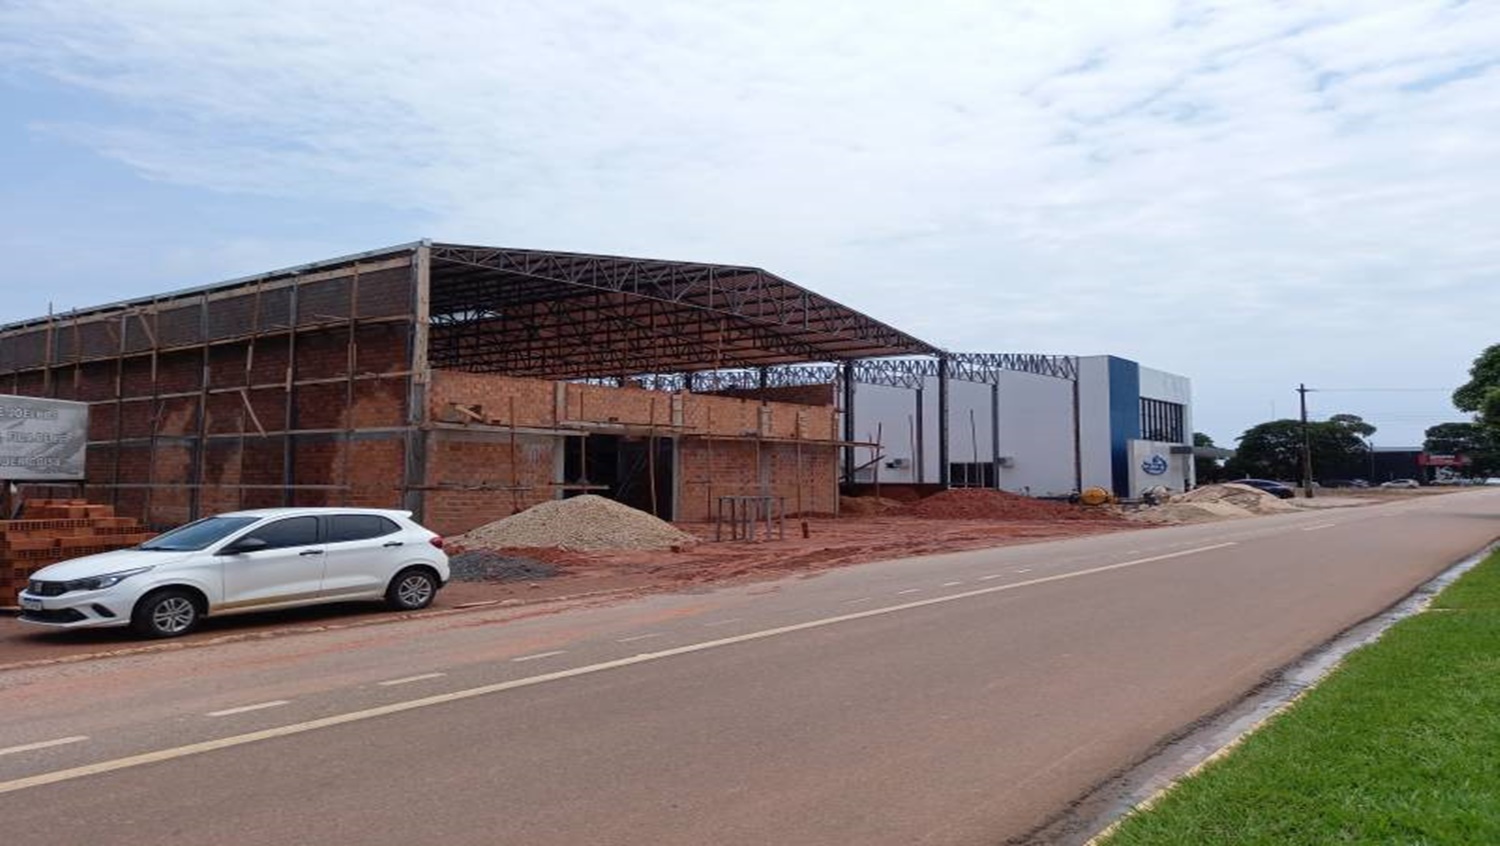 DESENVOLVIMENTO: Empresas estimulam a criação de novo centro comercial em Cerejeiras